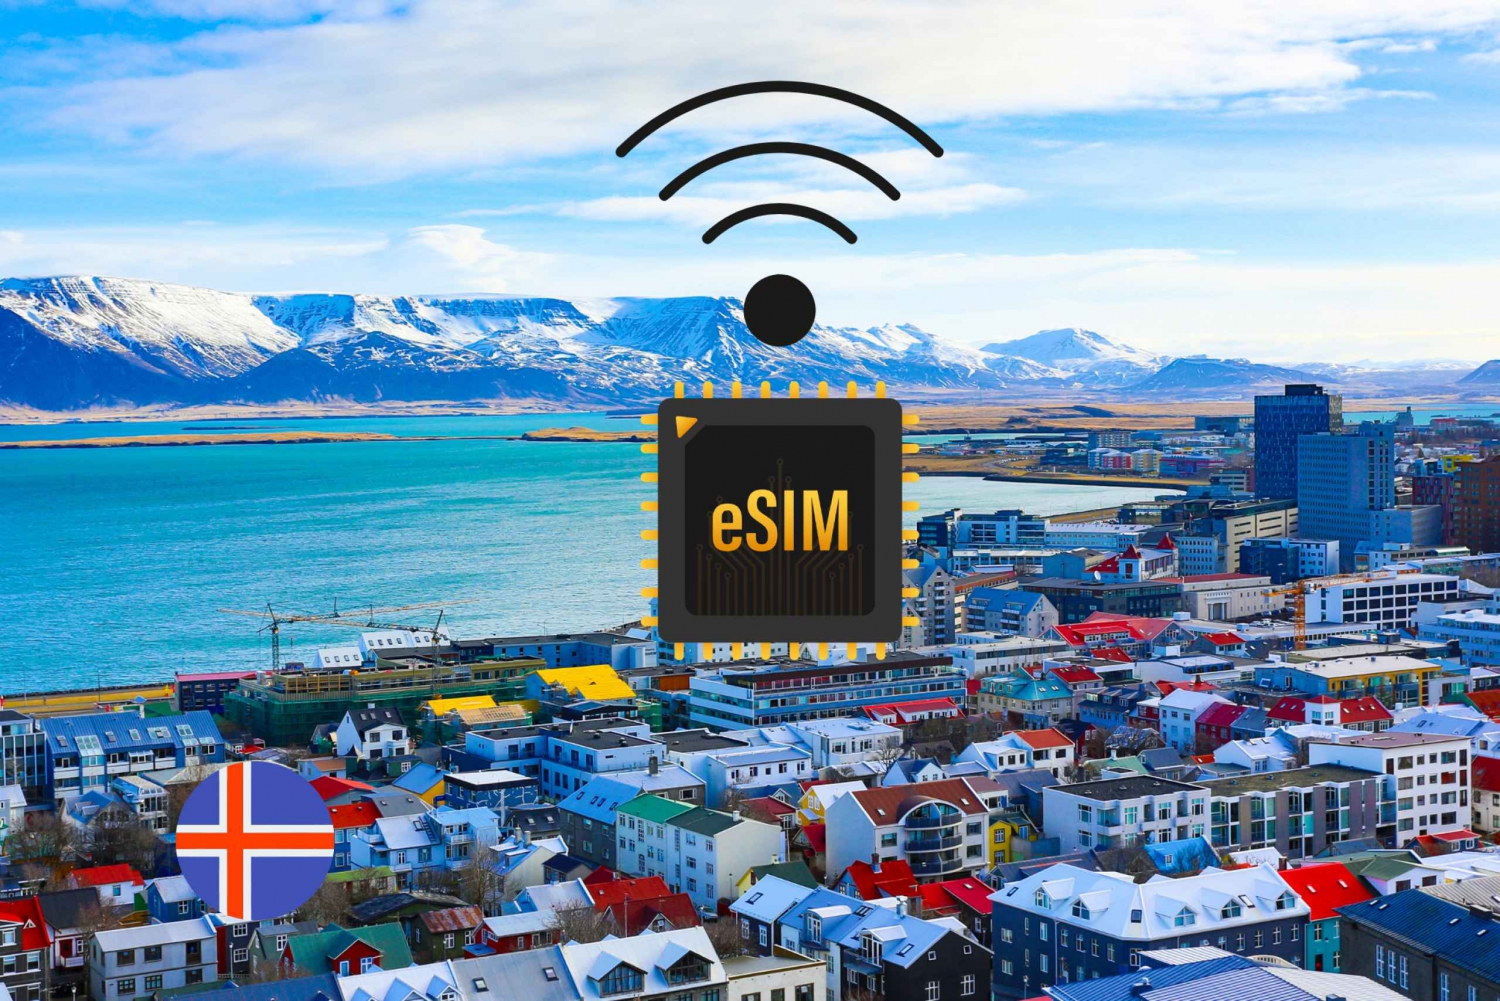 eSIM Islandia: Internetowy plan taryfowy 4G/5G